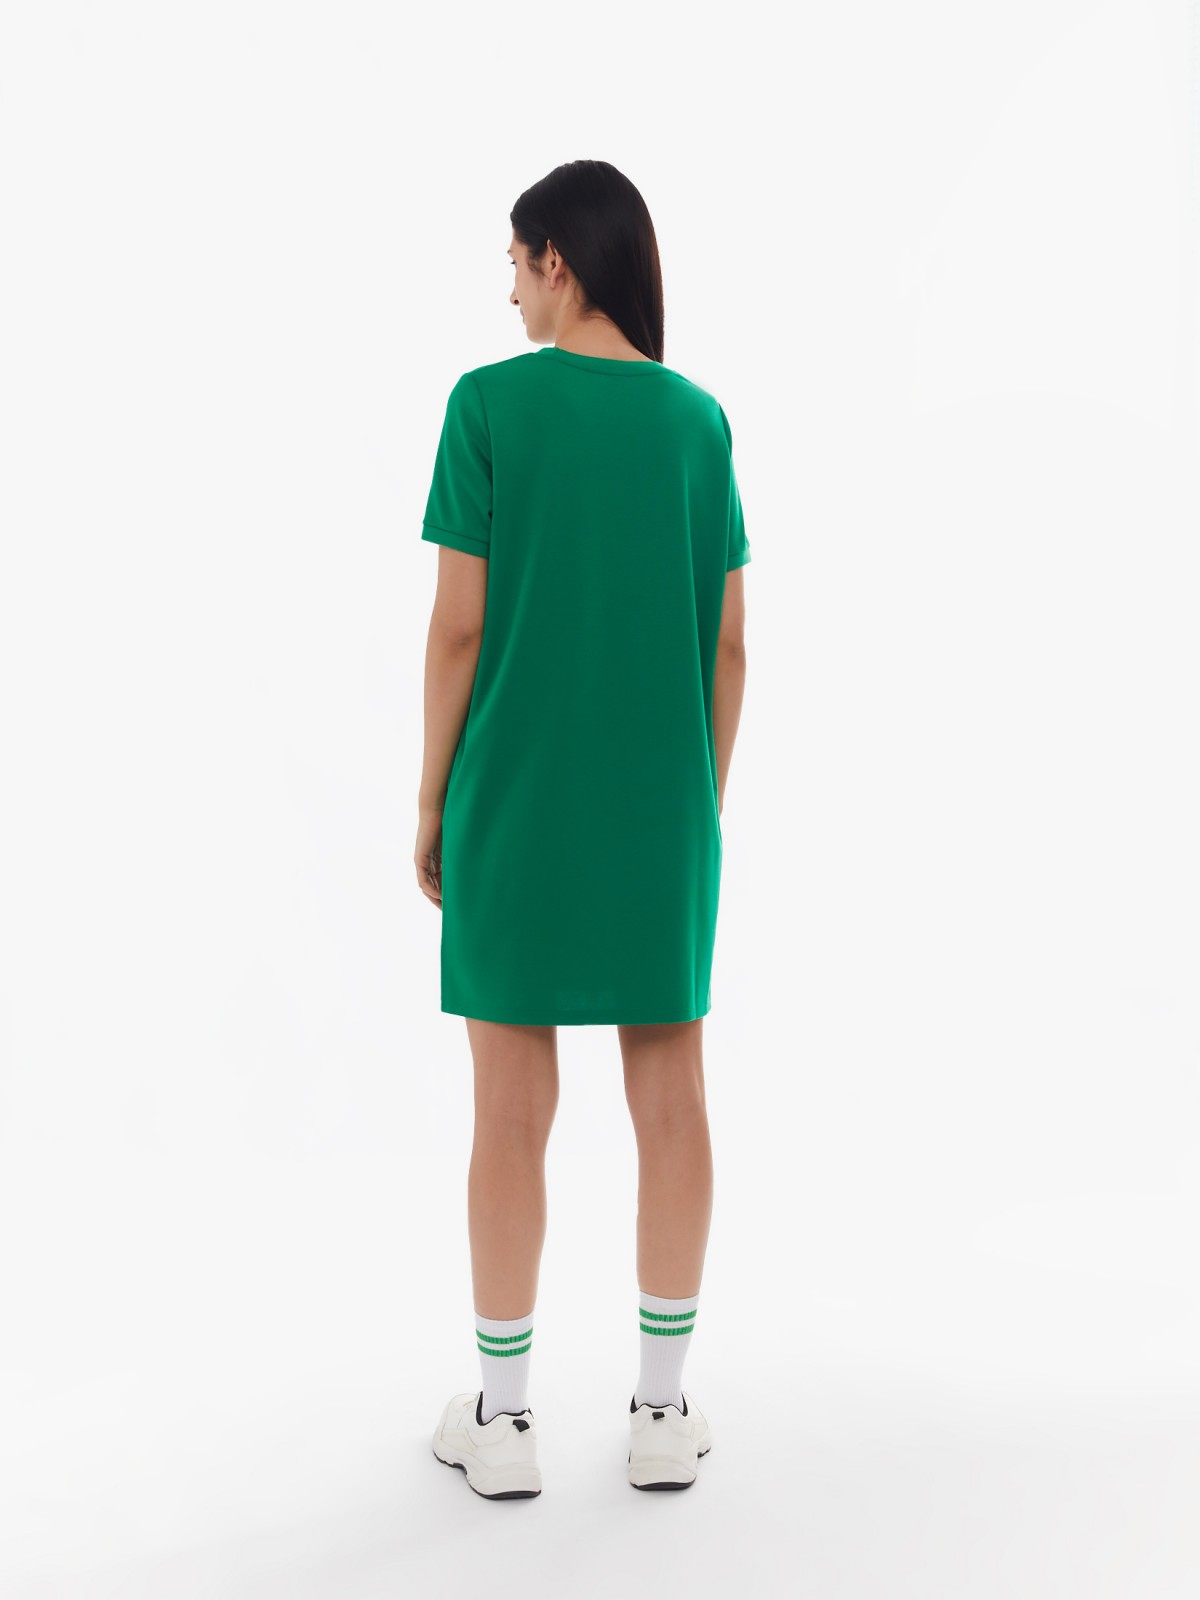 Платье-футболка с коротким рукавом и принтом-надписью zolla 024138135132, цвет зеленый, размер S - фото 6